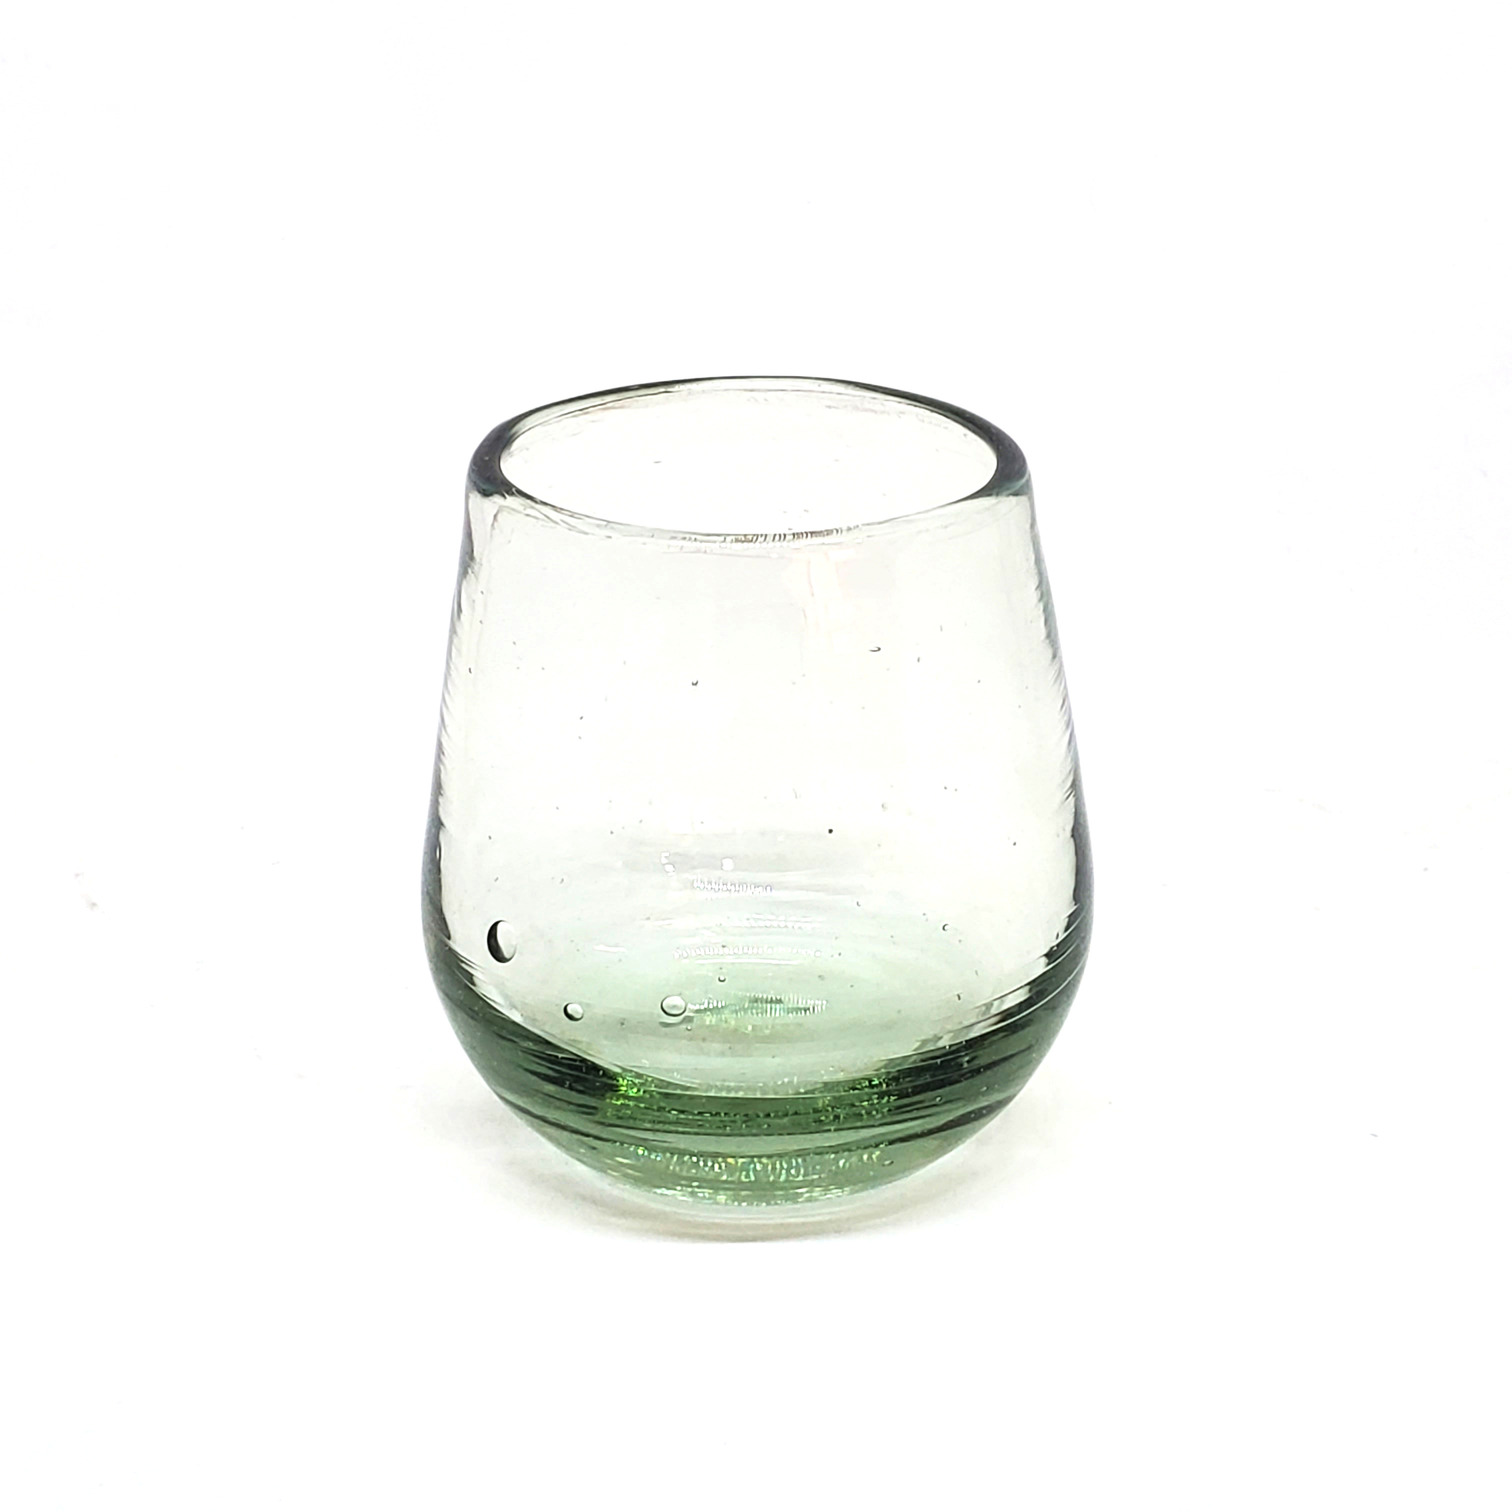 Color Transparente / Vasos Roly Poly Transparente (Juego de 6) / Nuestros vasos transparentes son fabricados uno por uno a base de vidrio reciclado, haciéndolos obras de arte únicas.